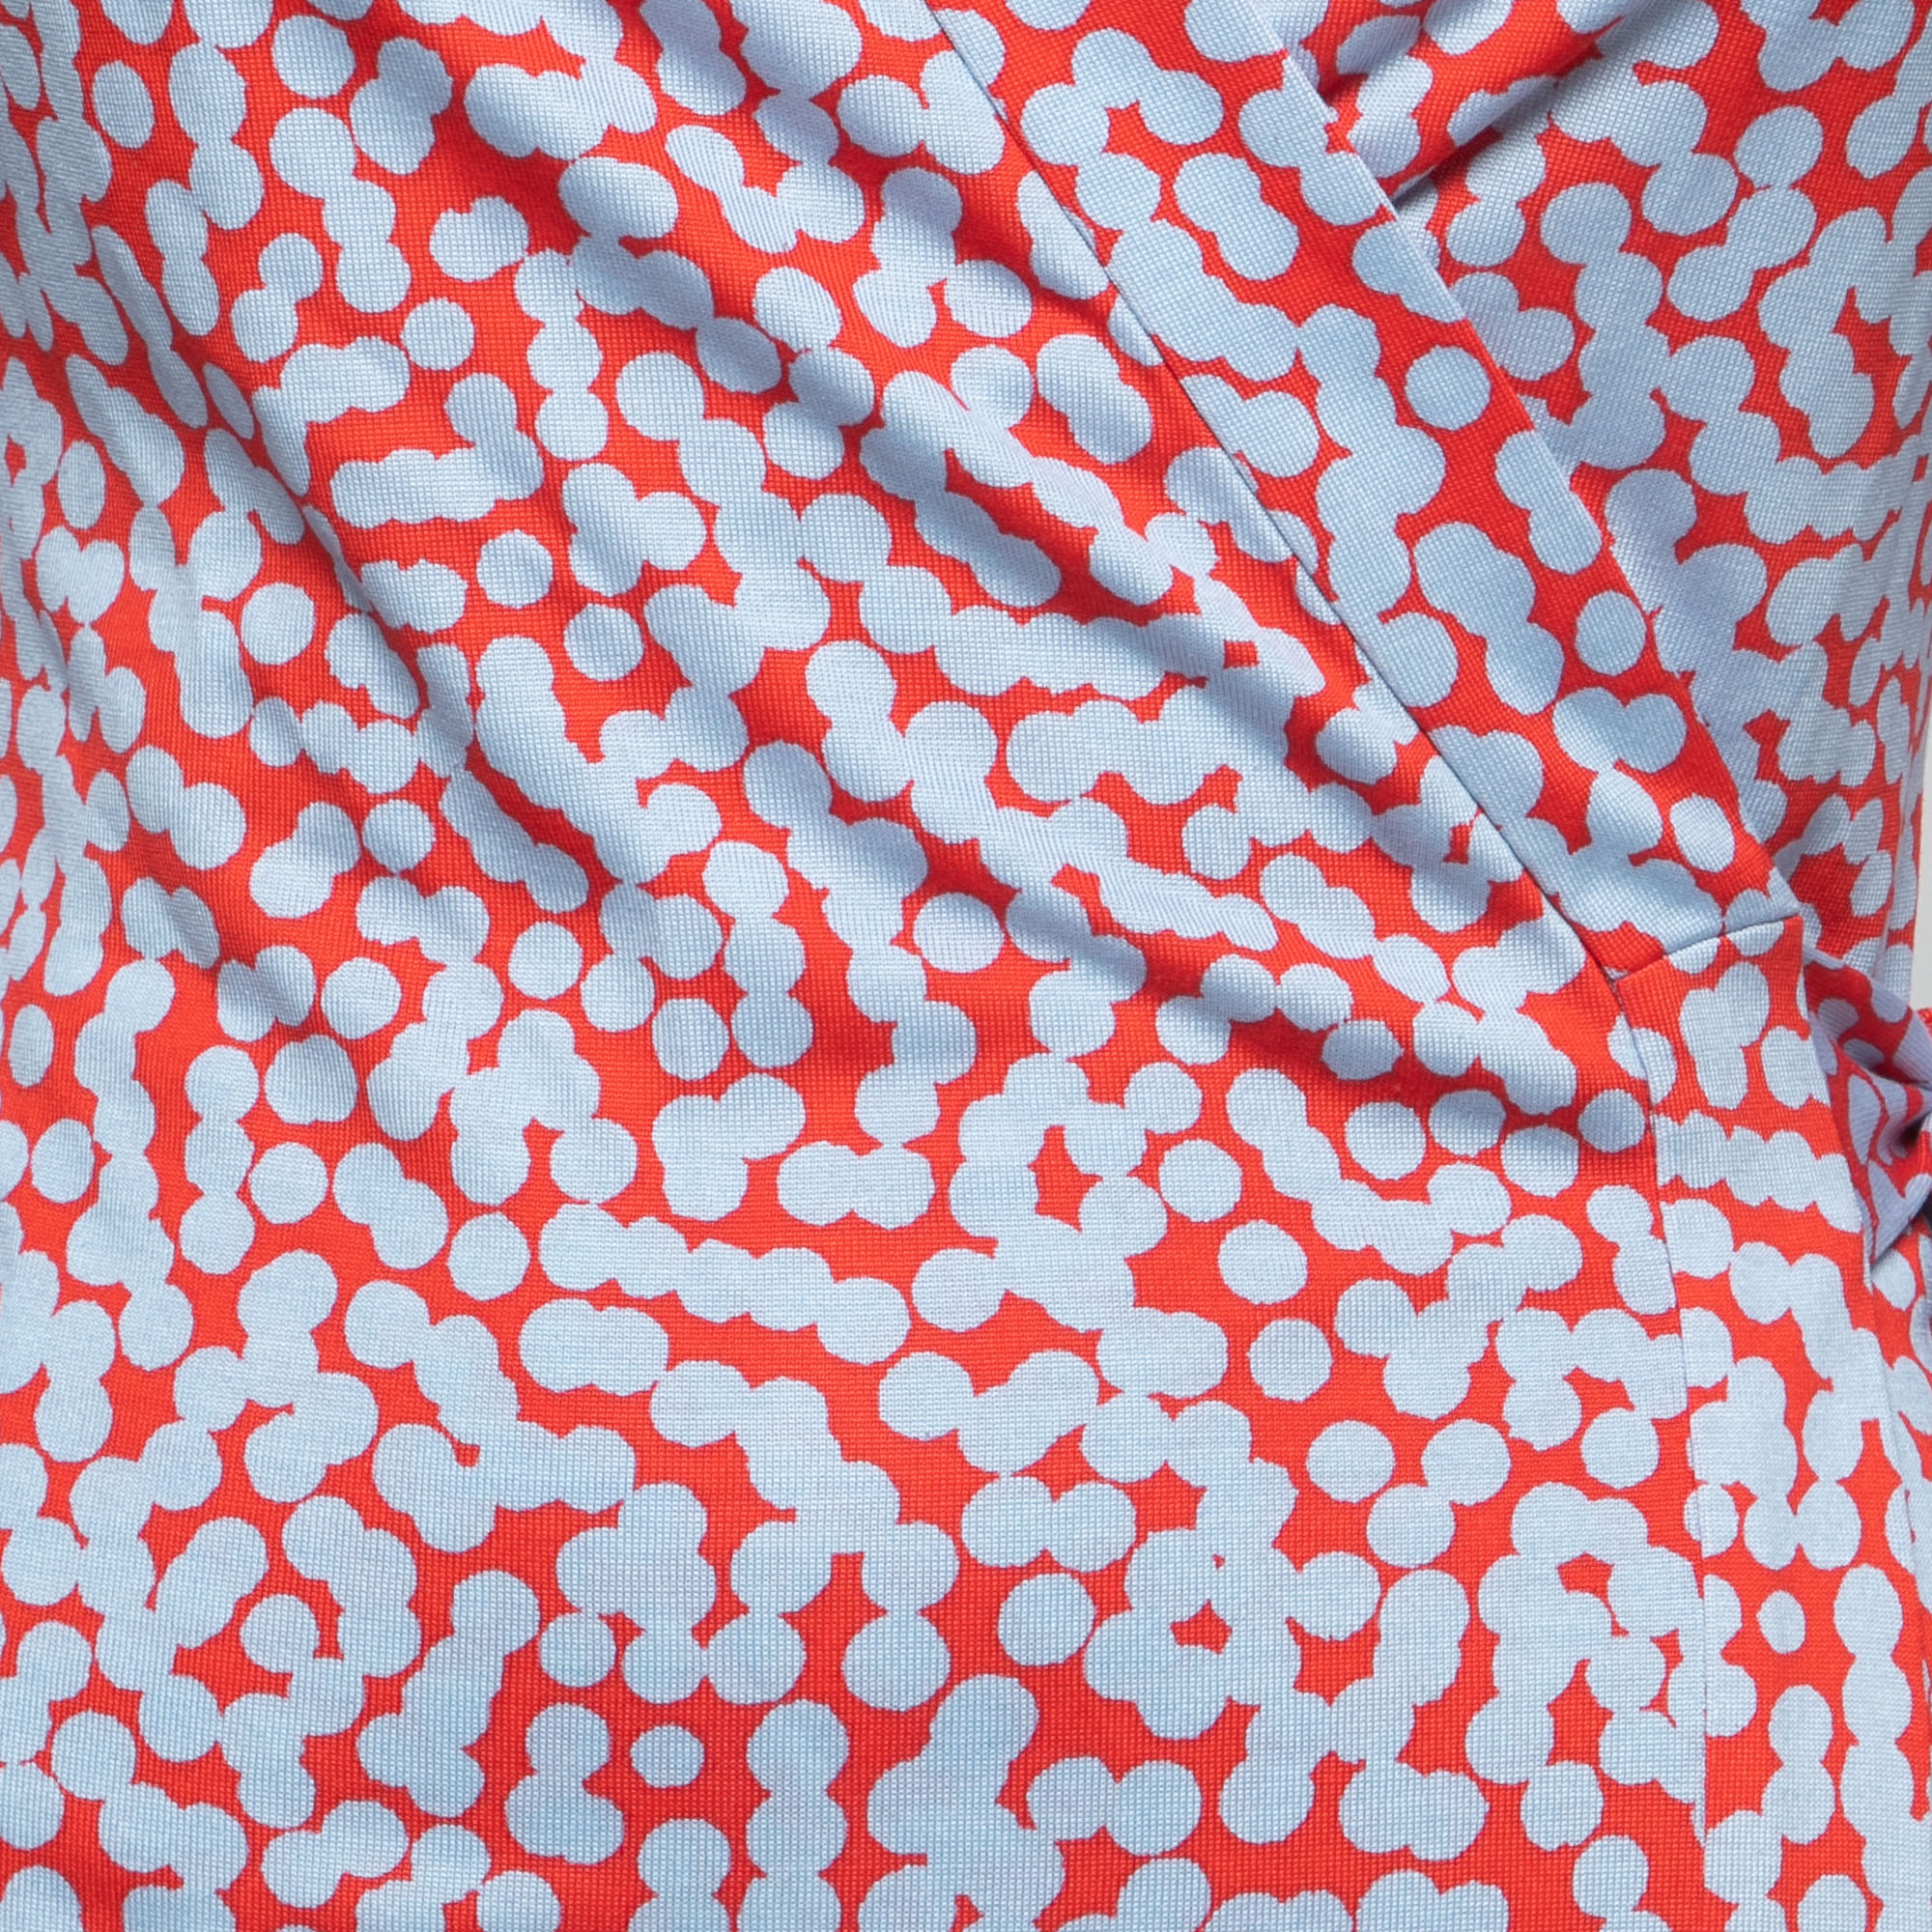 Diane Von Furstenberg Red/Blue Printed Silk New Julian Two Wrap Dress S